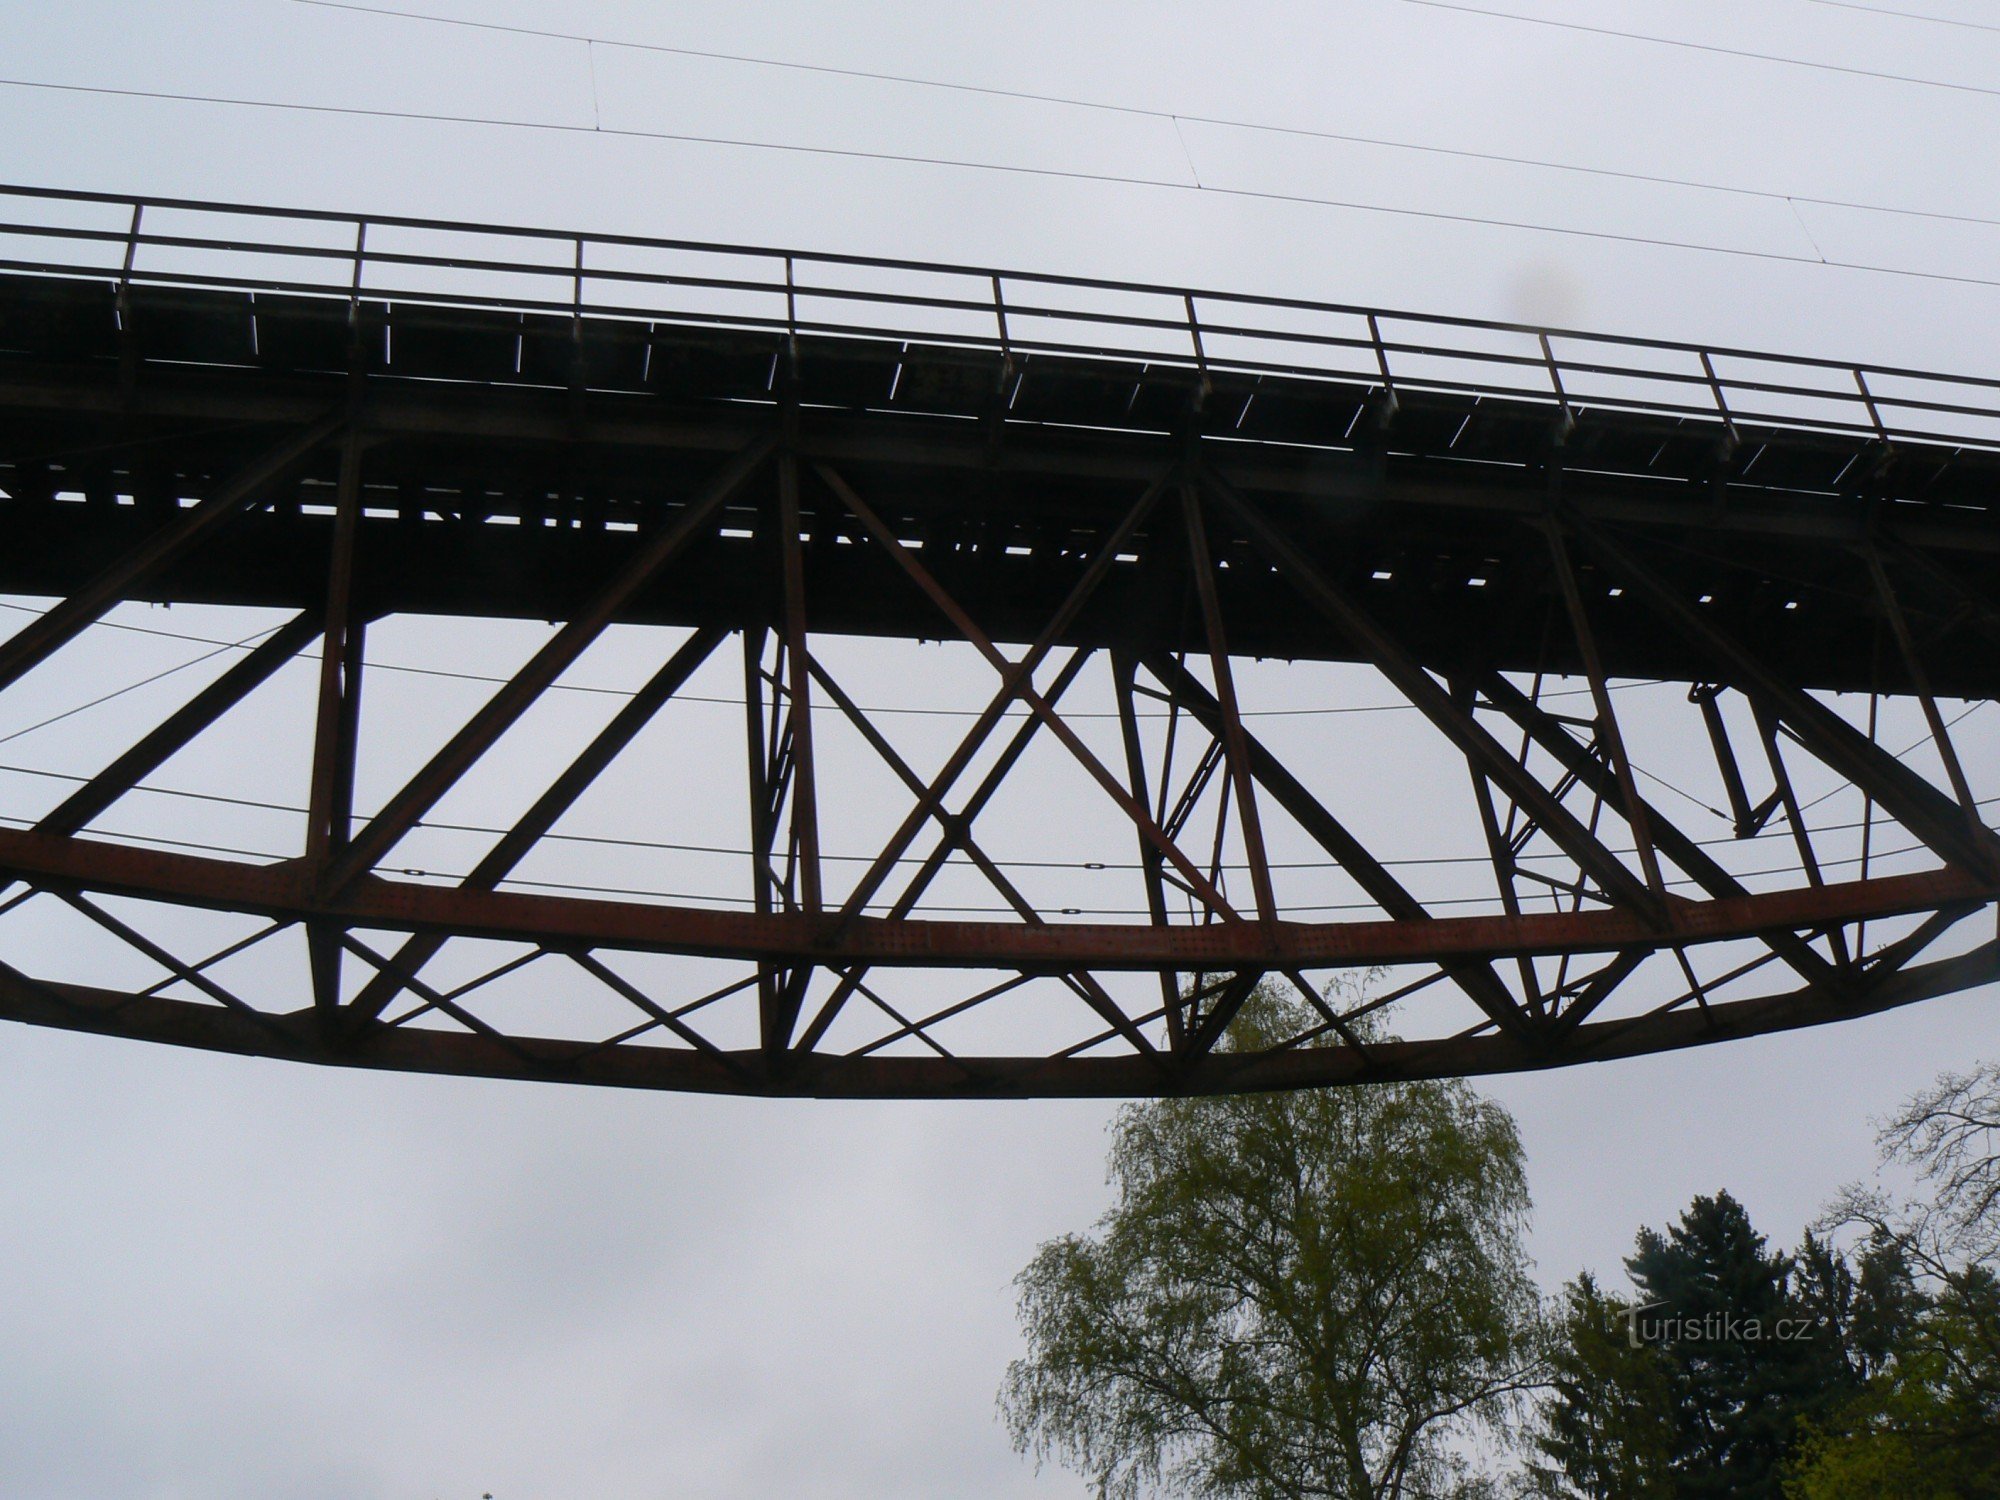 La struttura del ponte ha una forma semiparabolica rivolta verso il basso.